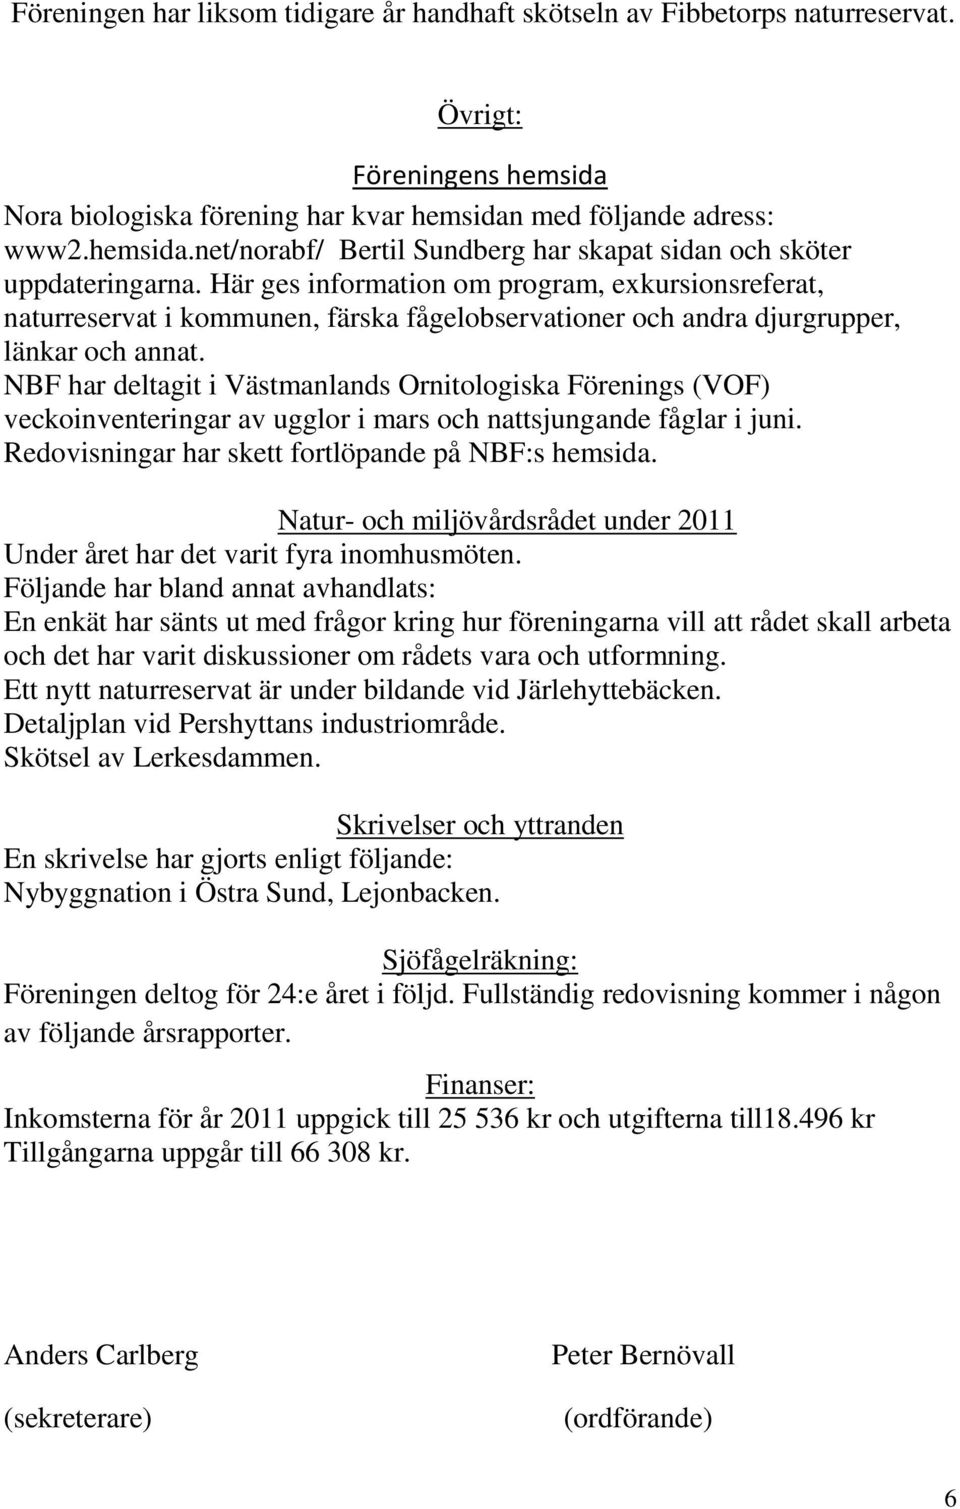 NBF har deltagit i Västmanlands Ornitologiska Förenings (VOF) veckoinventeringar av ugglor i mars och nattsjungande fåglar i juni. Redovisningar har skett fortlöpande på NBF:s hemsida.